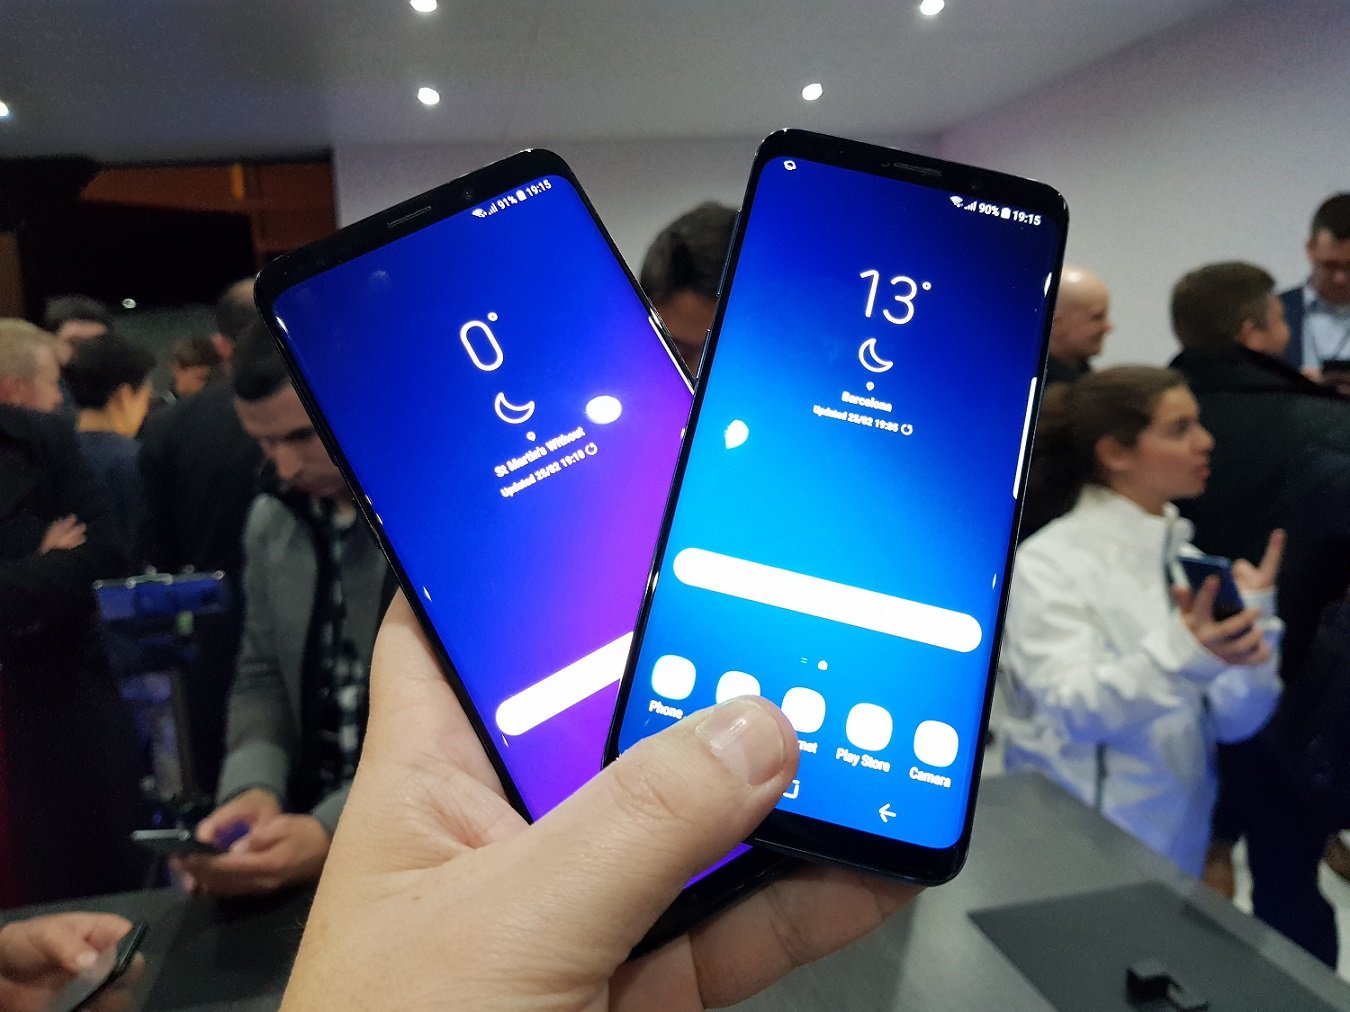 Τον Μάρτιο κυκλοφορούν τα νέα Galaxy S9 και Galaxy S9+ της Samsung με τιμές από €879 και €979 αντίστοιχα